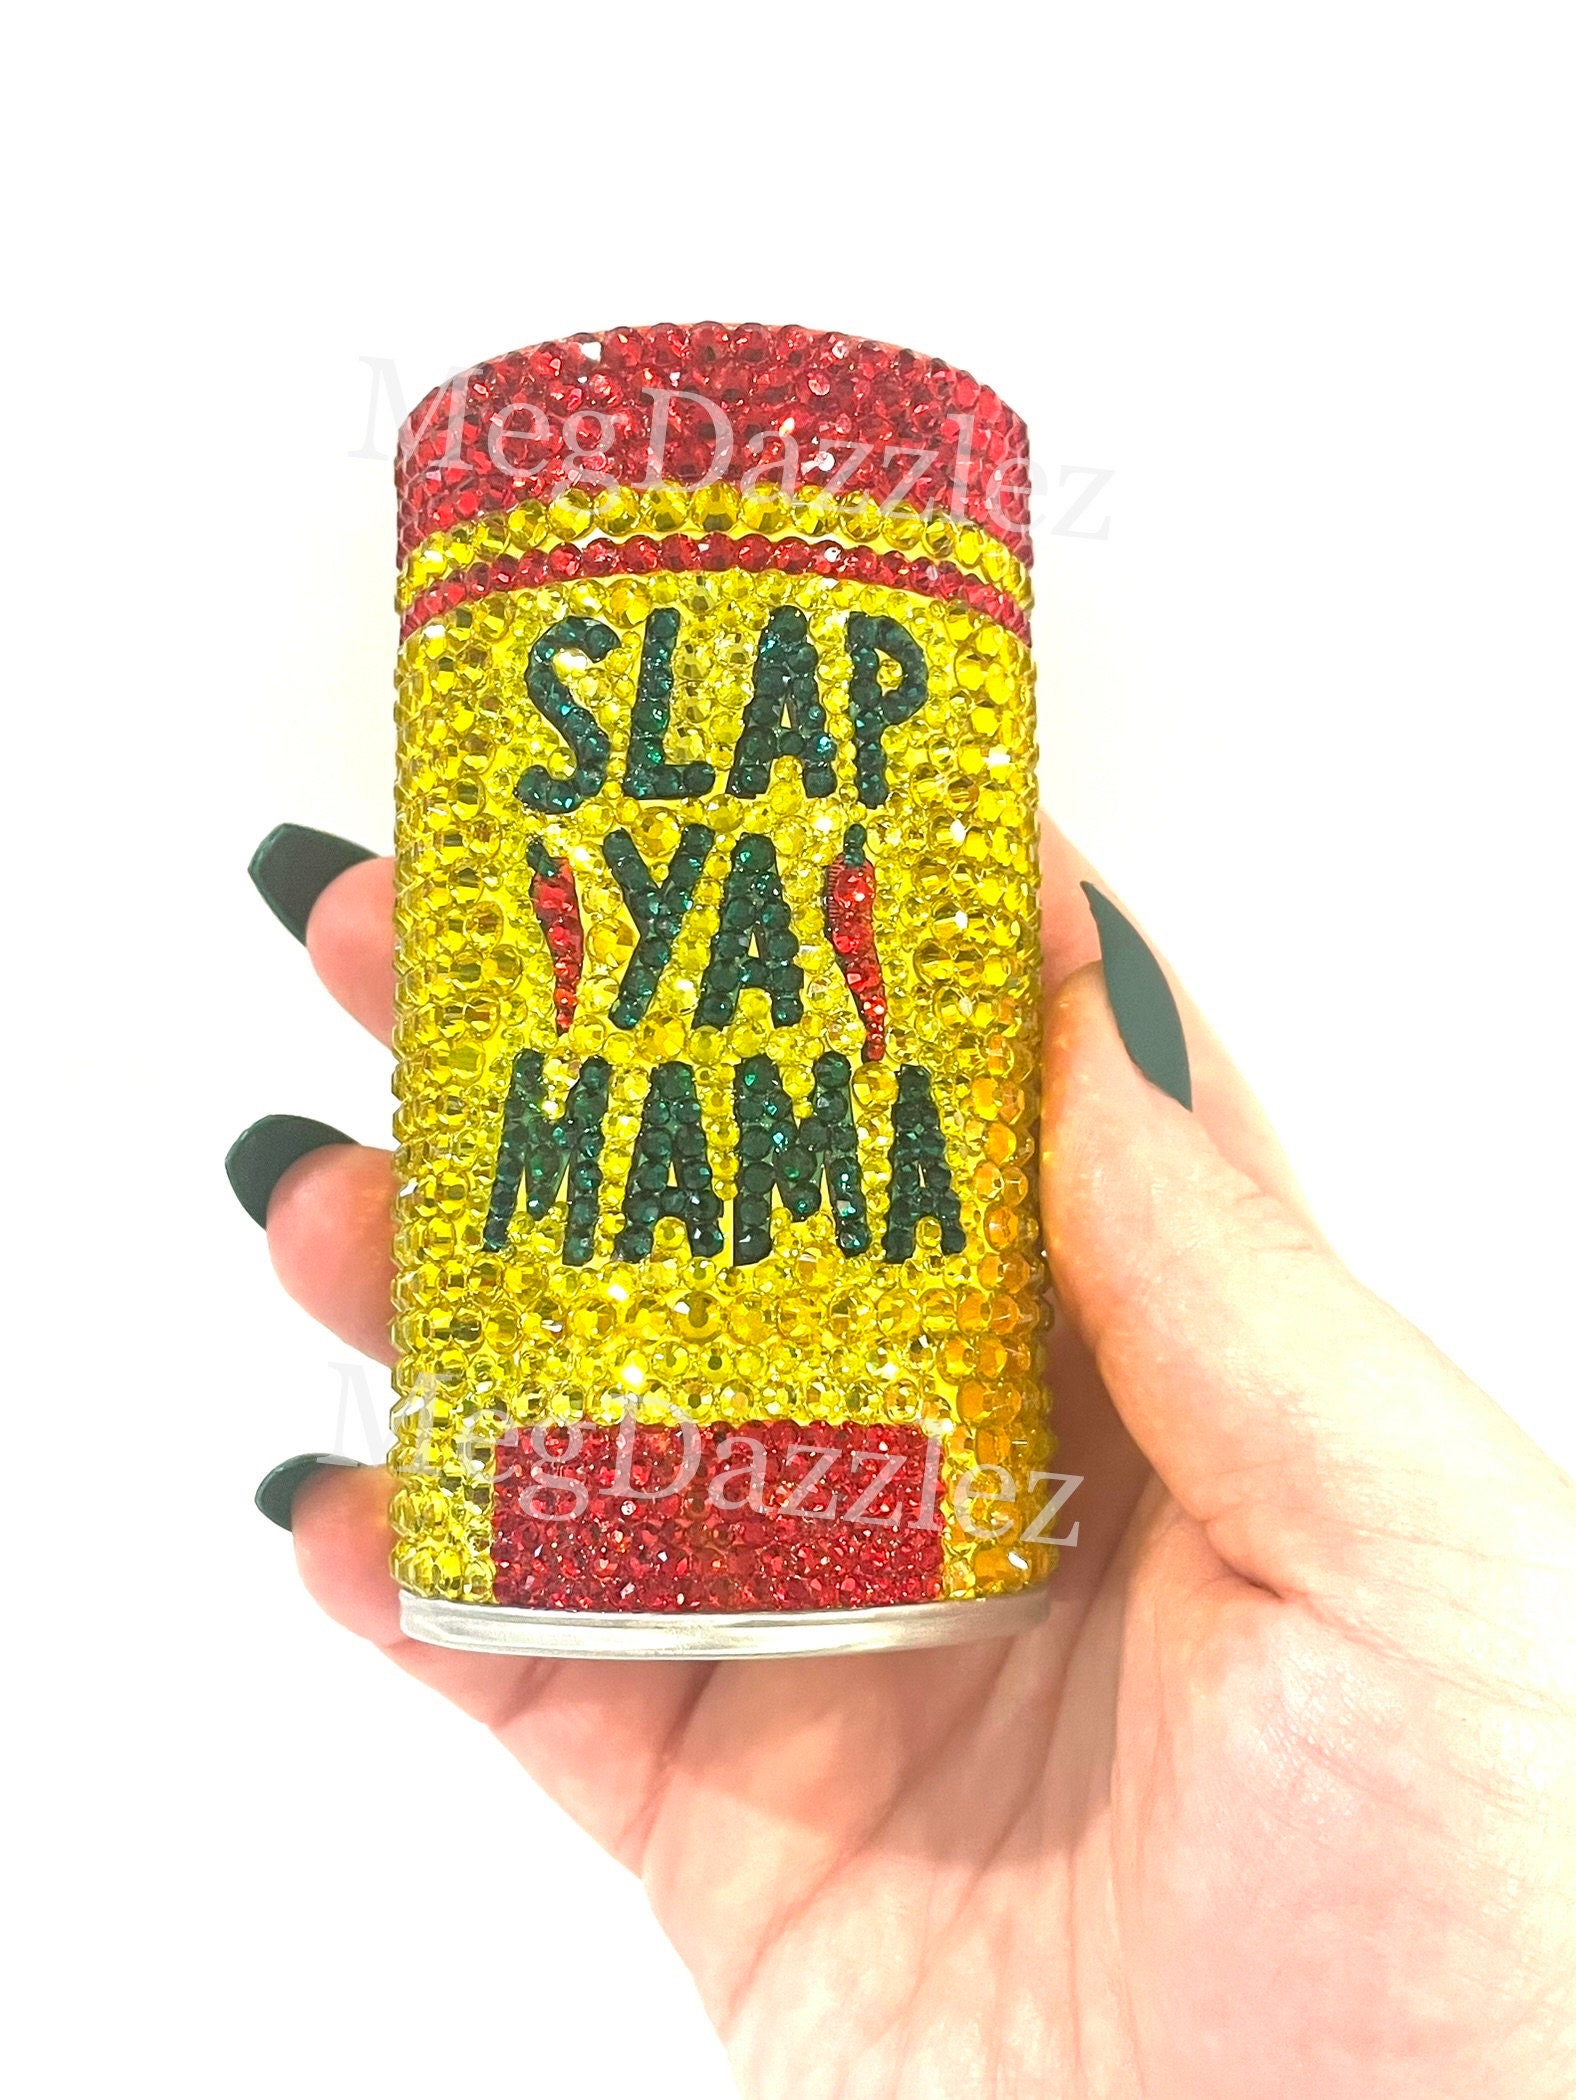 Slap Ya Mama Hot Cajun Seasoning - Hot Sauce Mall